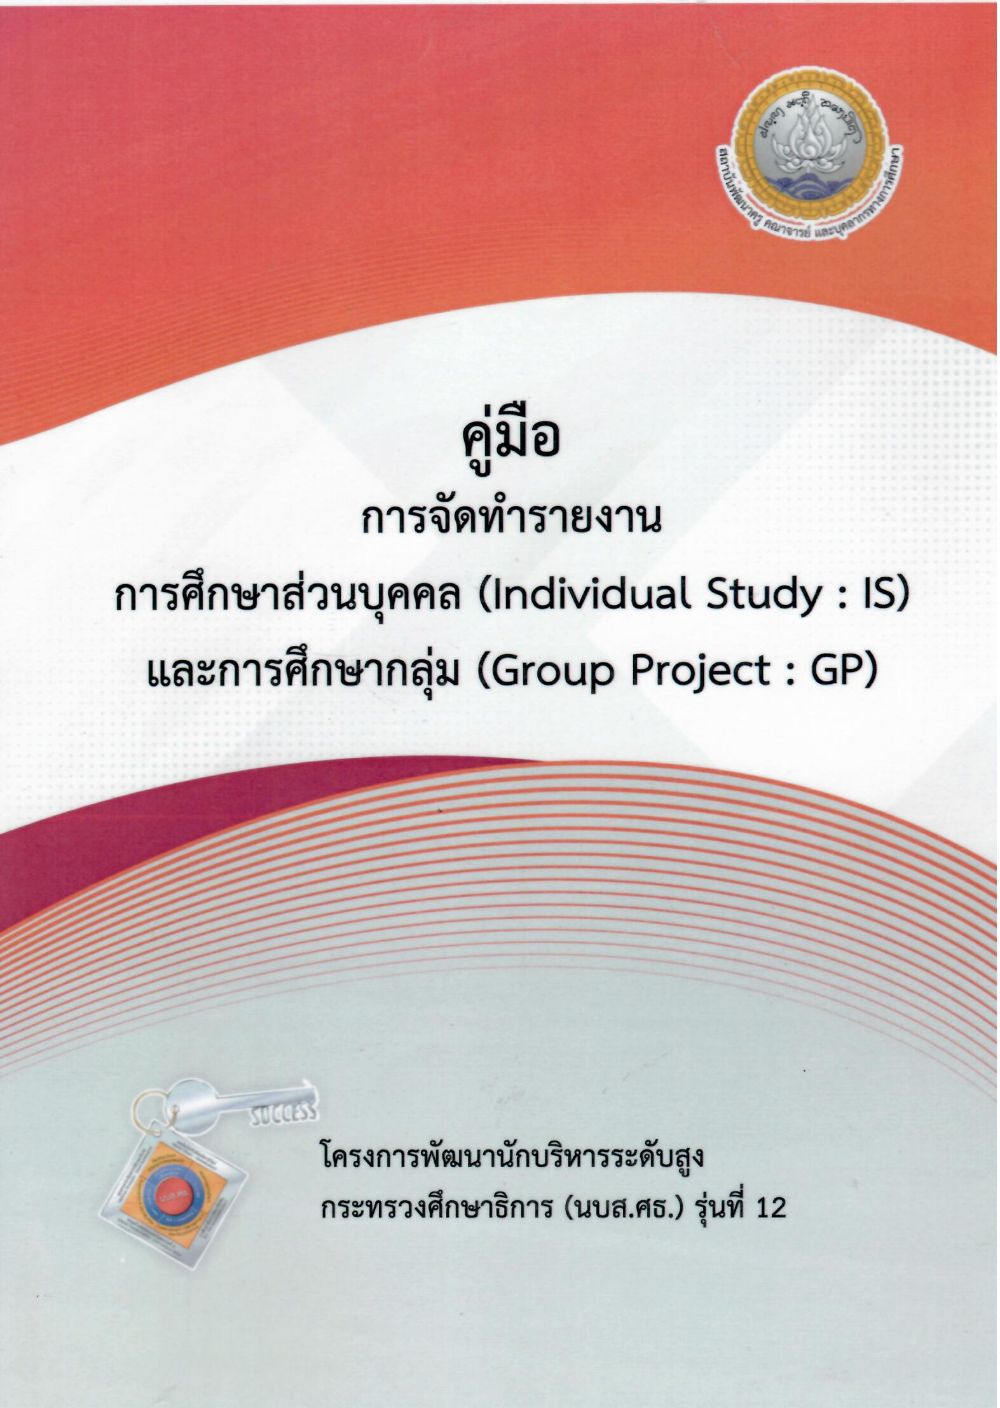 คู่มือการจัดทำรายงานการศึกษาส่วนบุคคล (Individual Study : IS) และรายงานการศึกษากลุ่ม (Group Project : GP) หลักสูตรพัฒนานักบริหารระดับสูง กระทรวงศึกษาธิการ (นบส.ศธ.) รุ่นที่ 12/ สถาบันพัฒนาครู คณาจารย์และบุคลากรทางการศึกษา